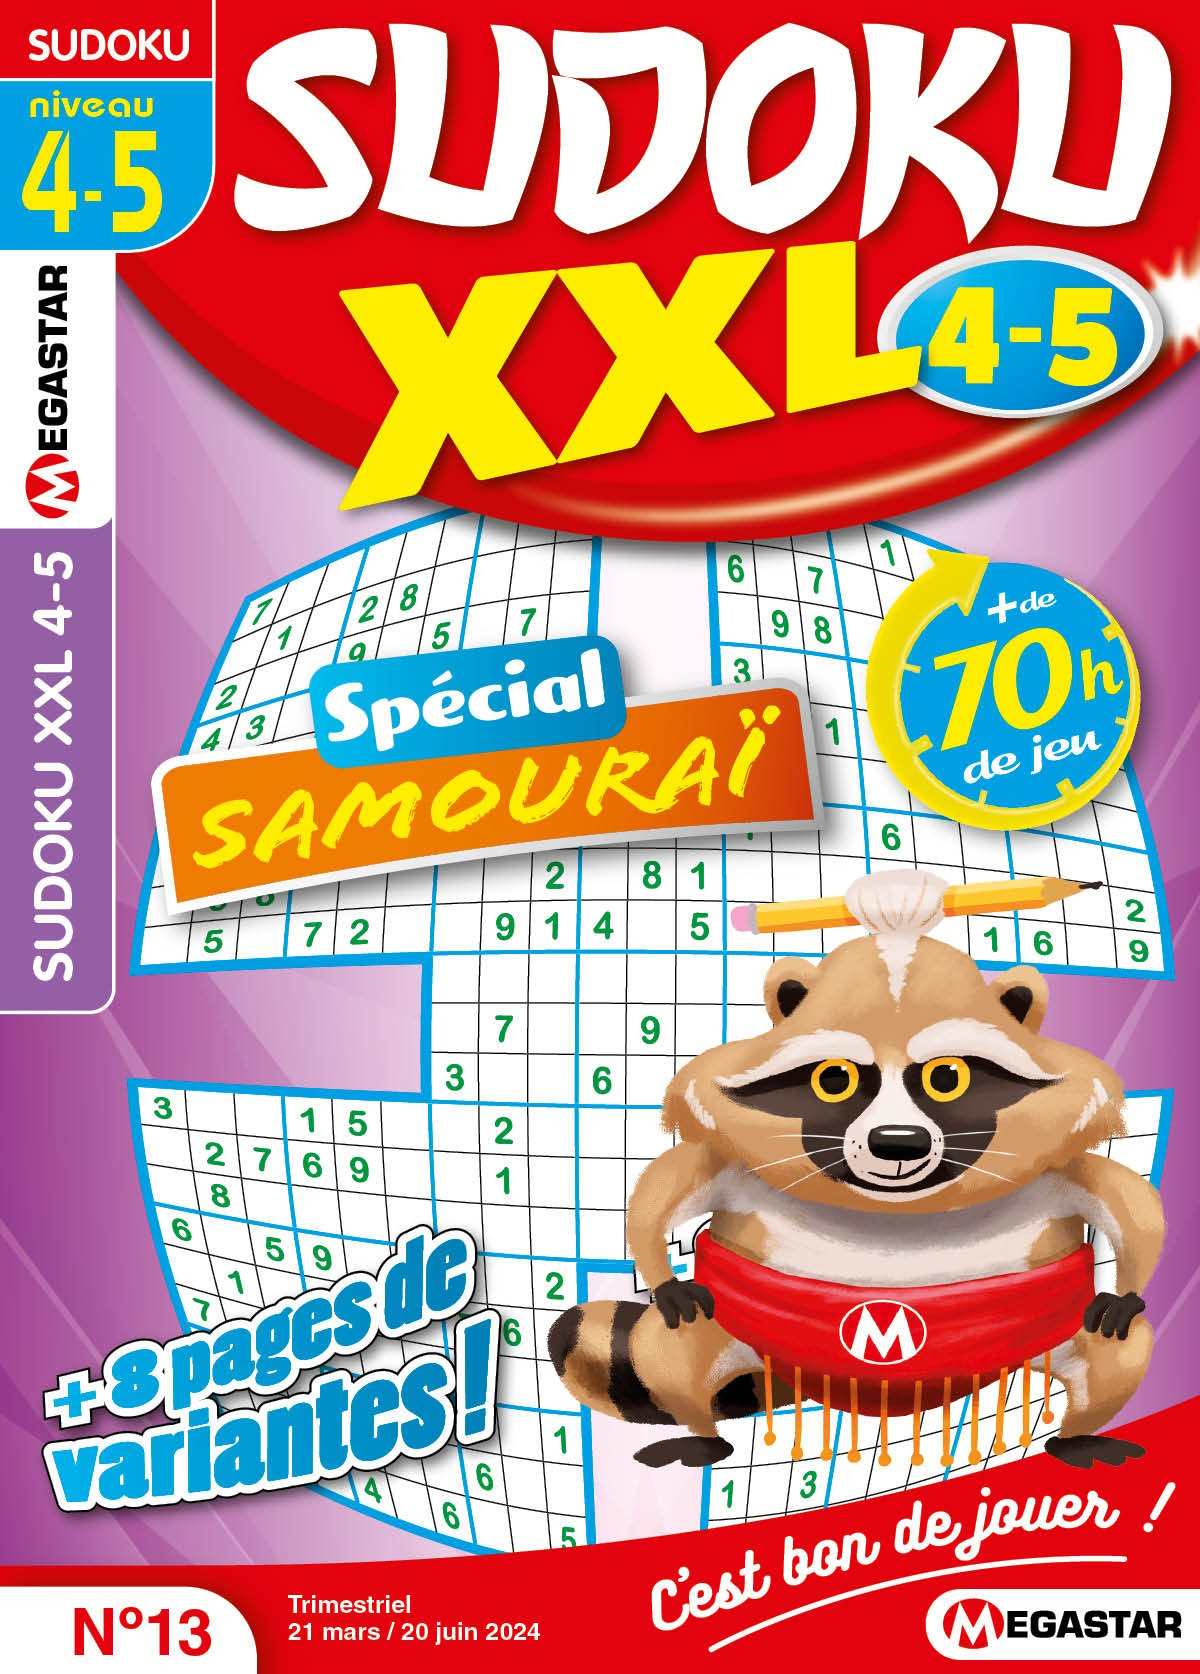 Sudoku XXL 4-5 Numéro 13